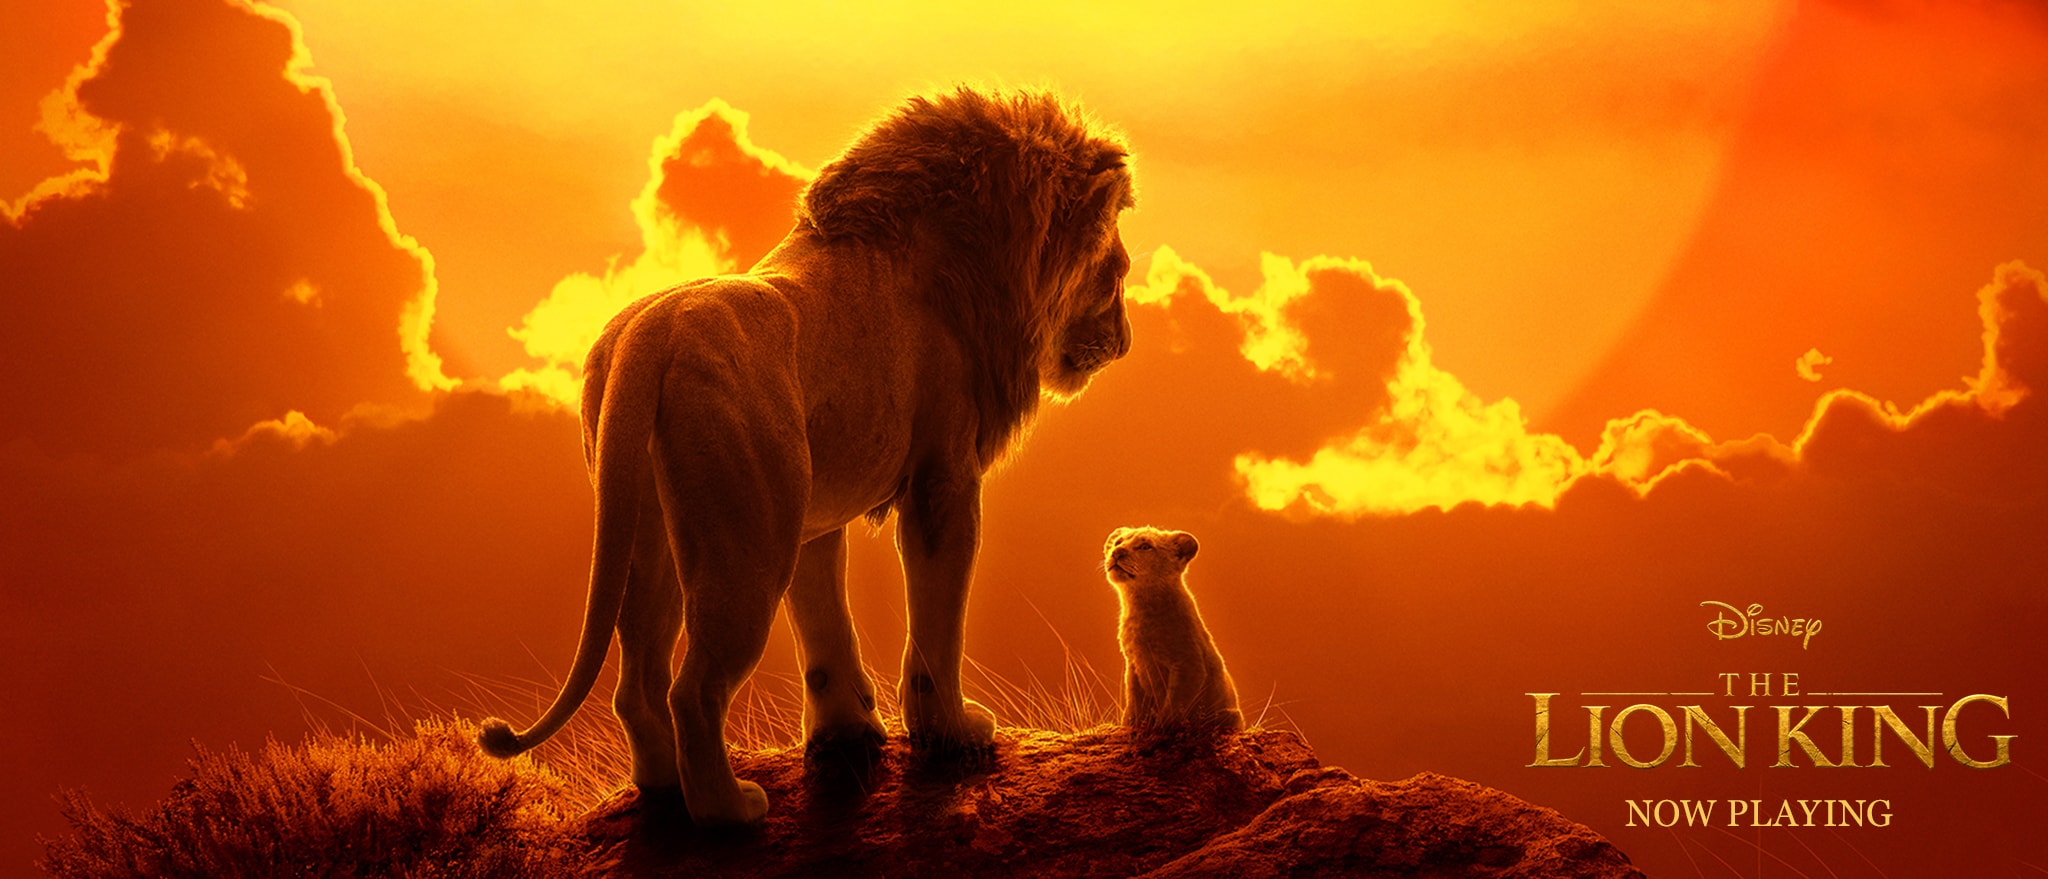 Malgré une baisse par rapport à sa première semaine, Le Roi Lion reste le film le plus regardé dans les cinémas américains ce week-end